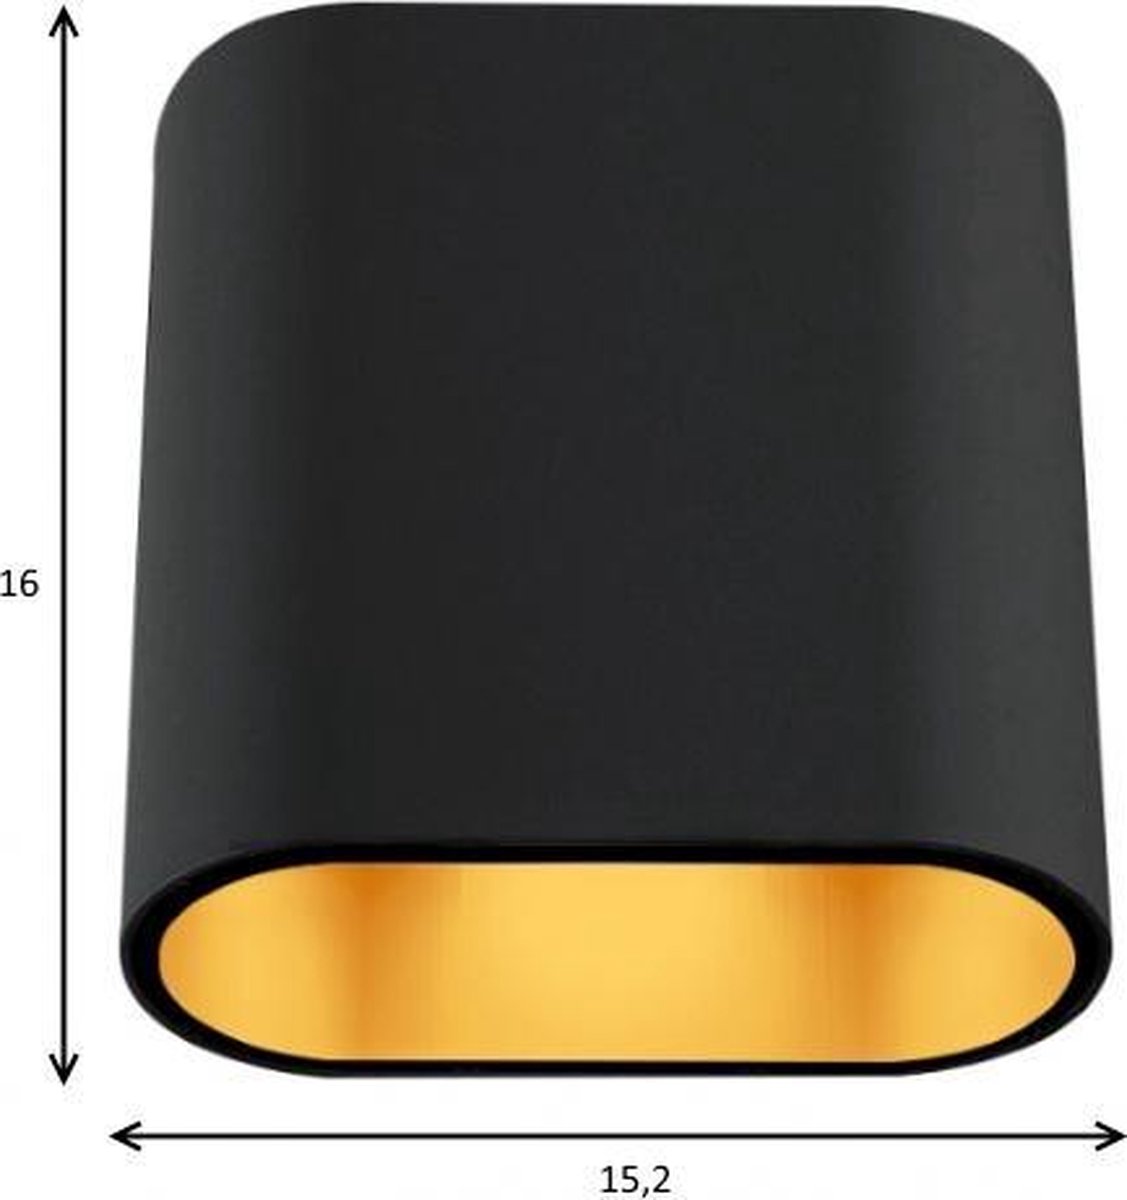 Modular Duell Wall wandlamp zwart/goud | bol.com